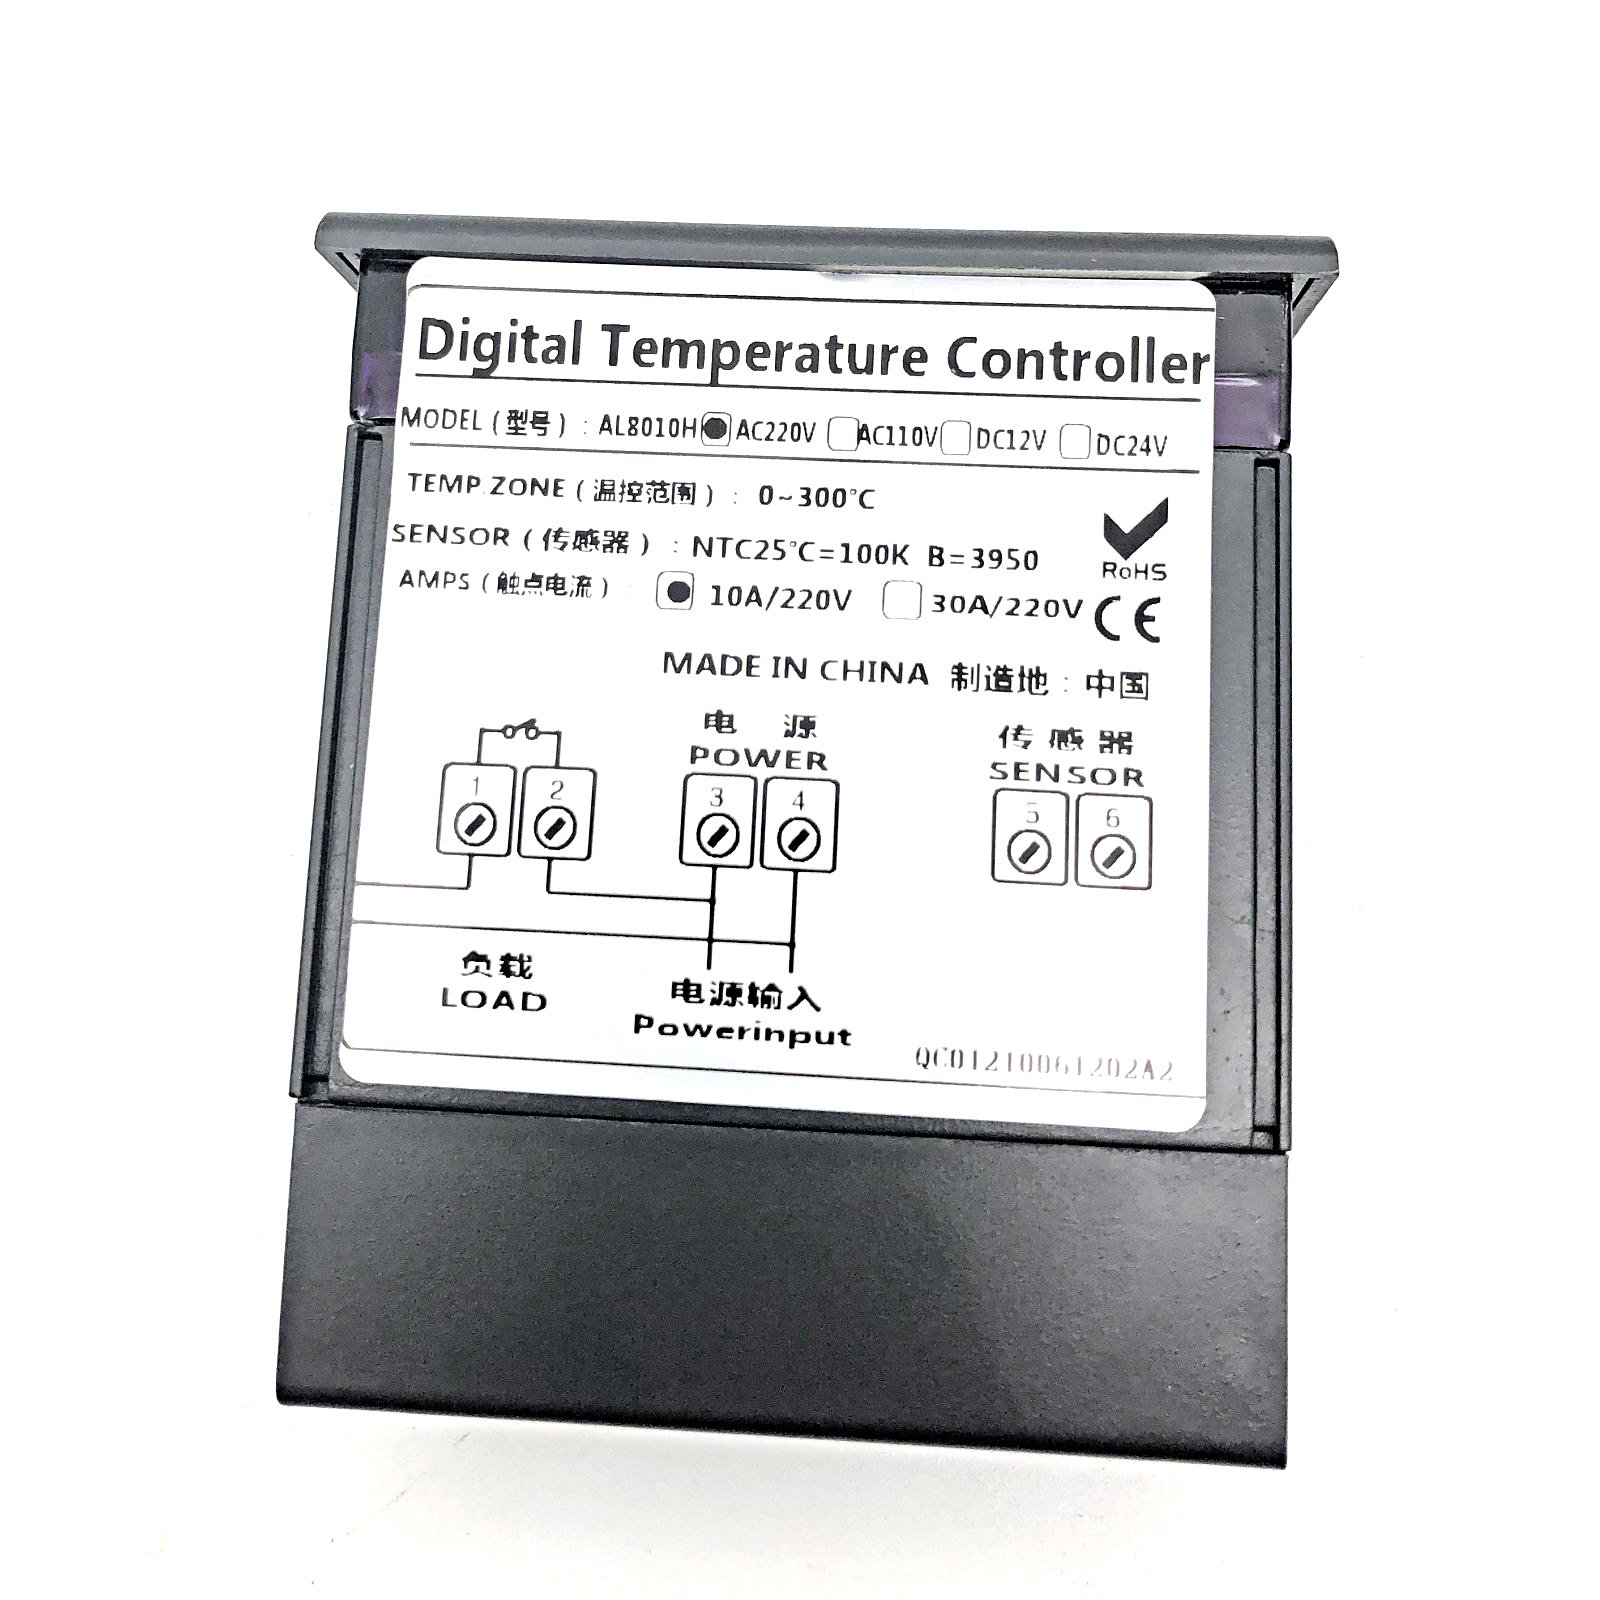 RC19 AL8010H Терморегулятор, цифровой термостат регулятора температуры 220V 10A, для контроля температуры и управления вентиляторами фото 4